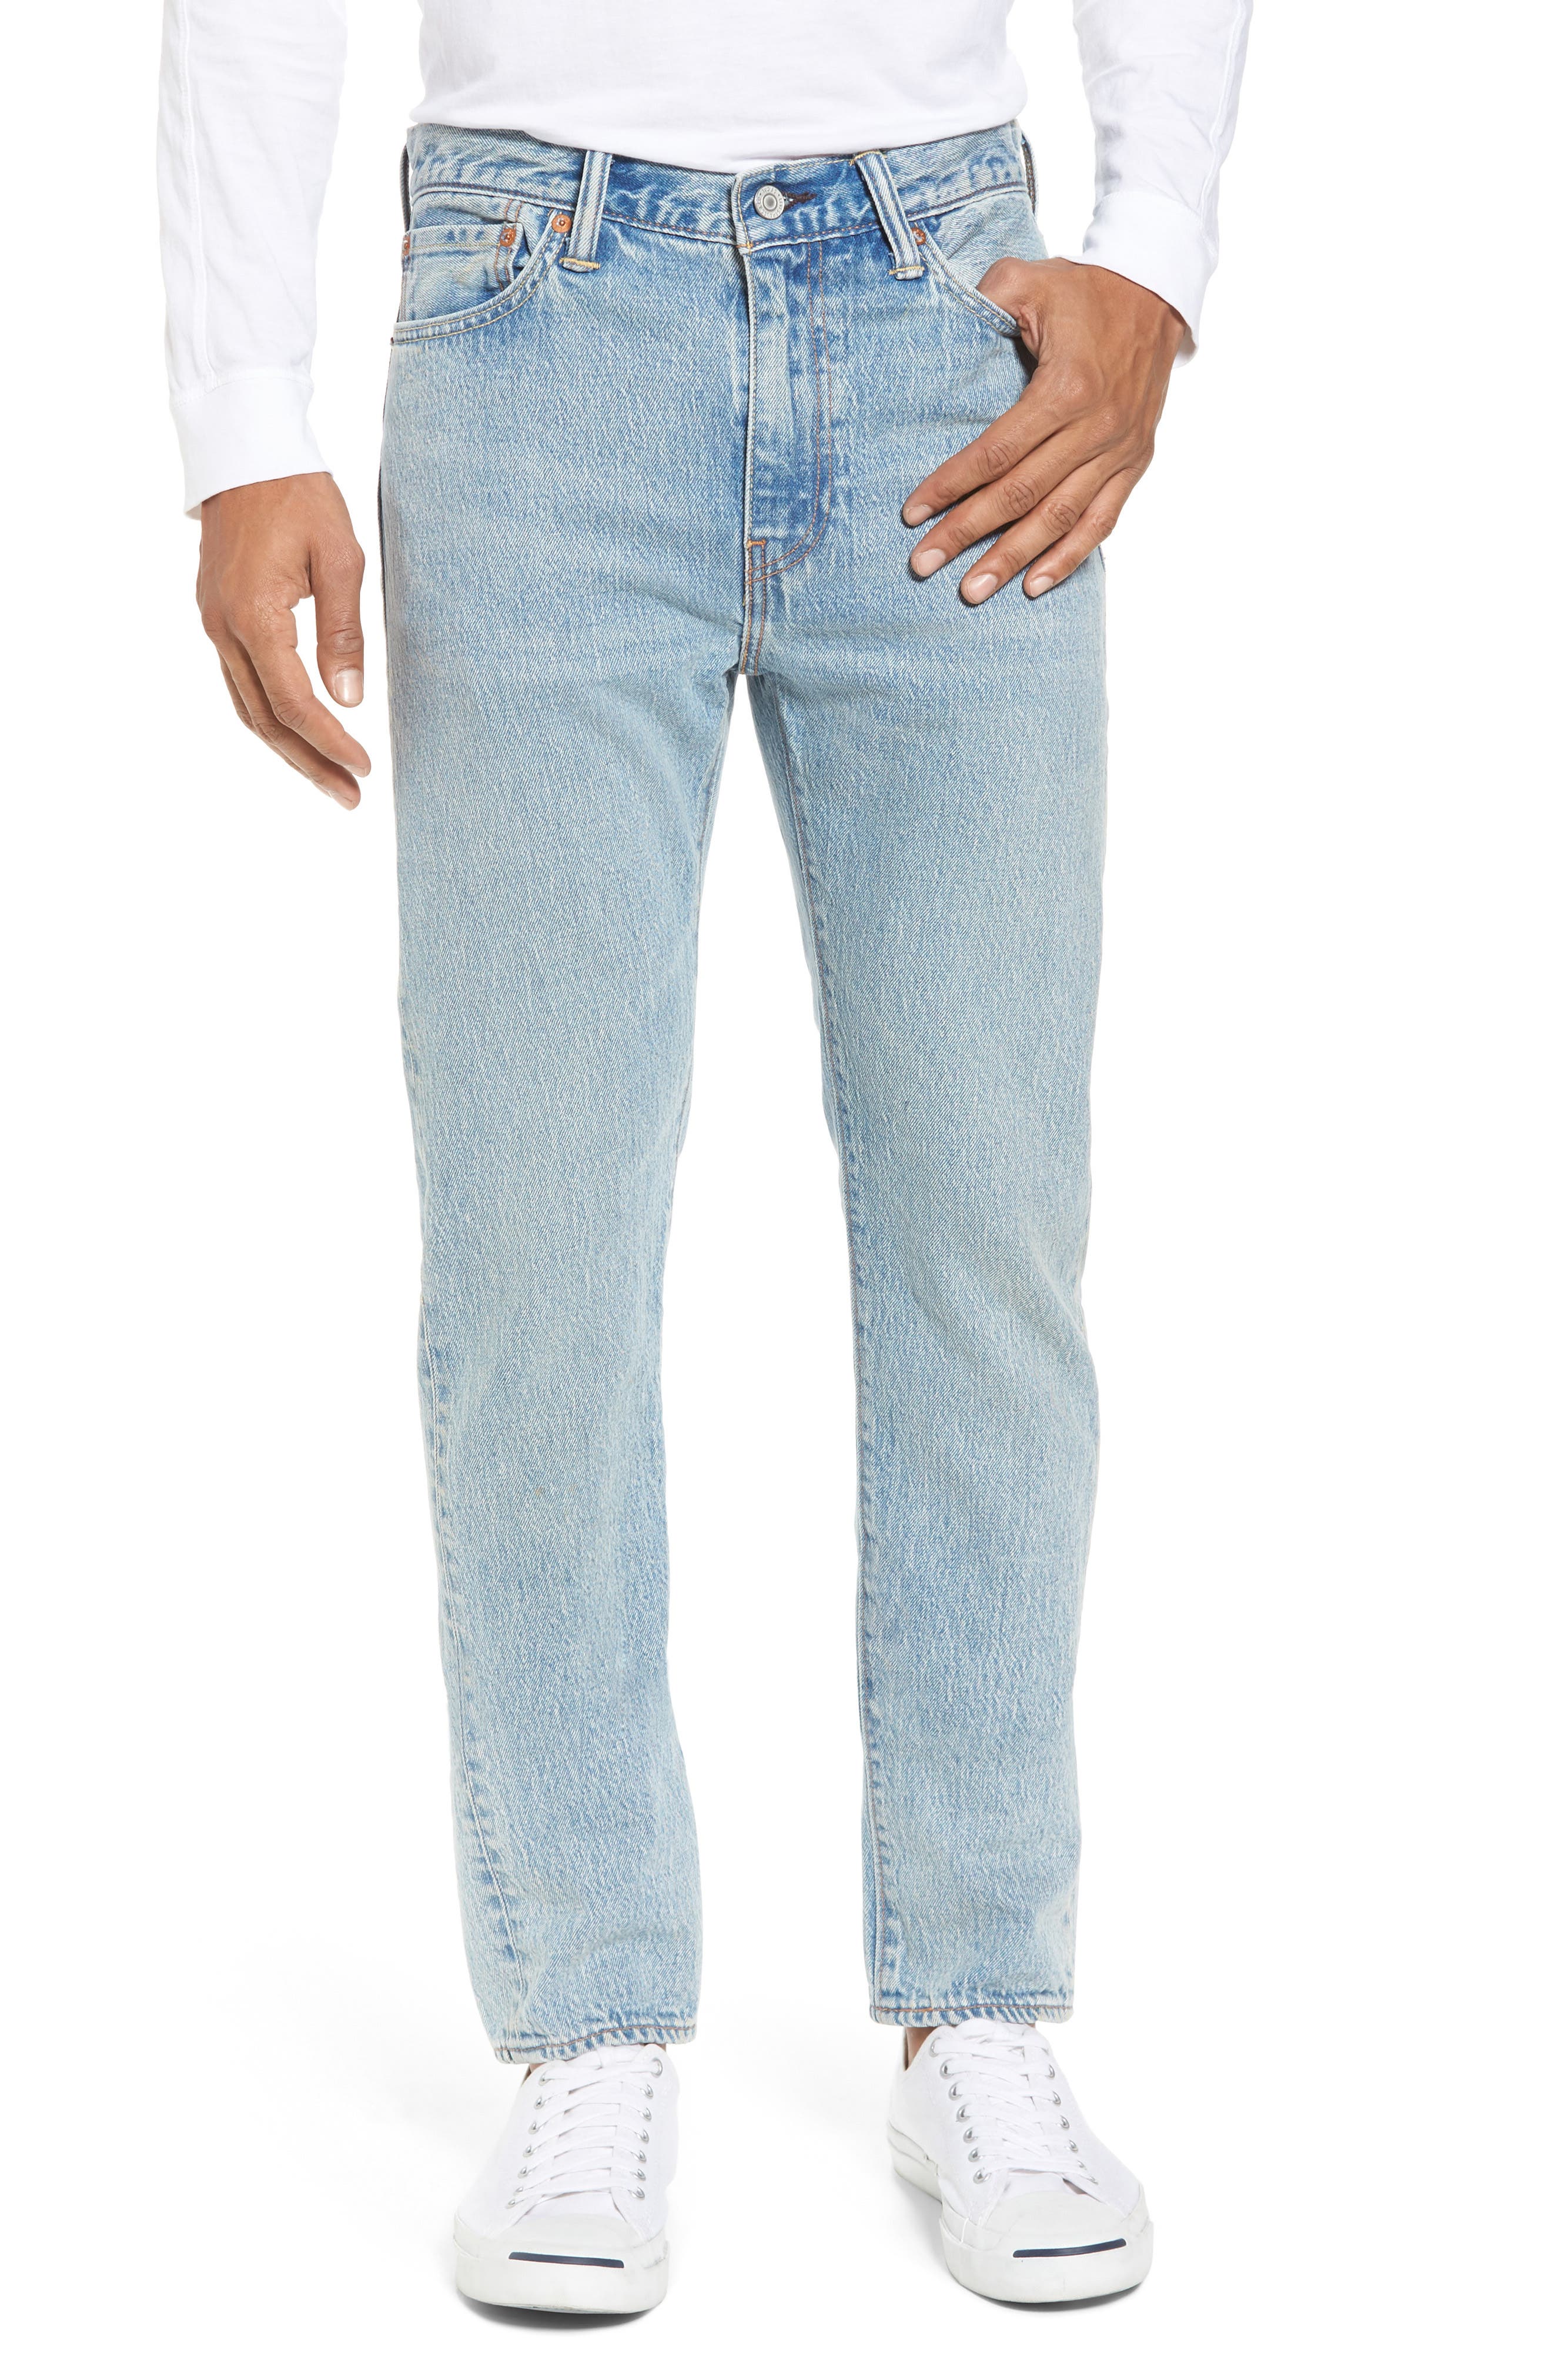 levi's men's 511 light blue slim fit jeans